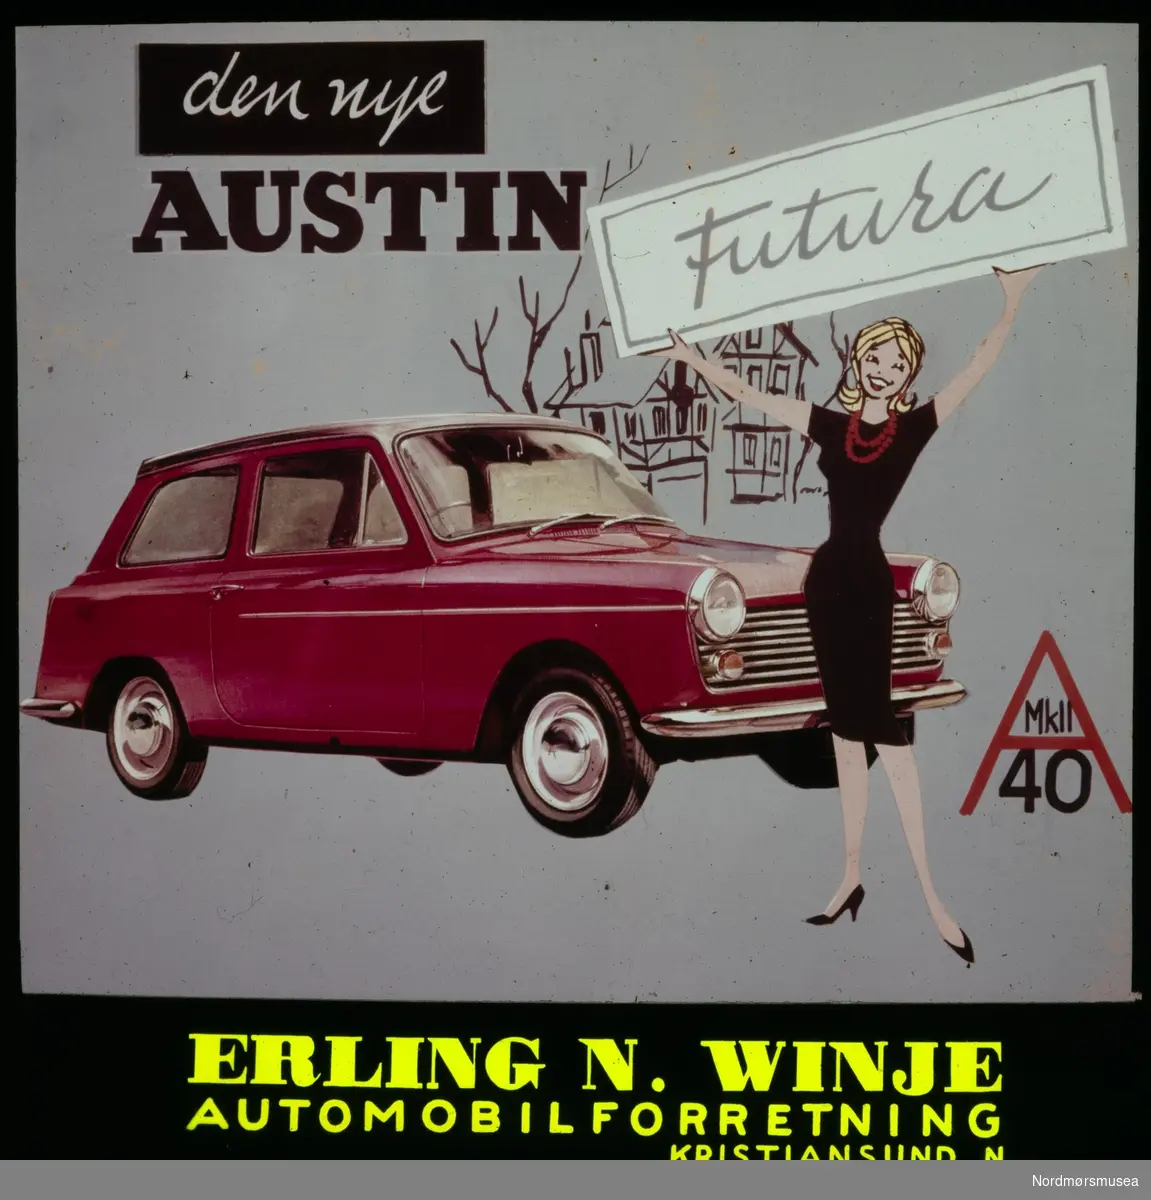 Kinoreklame for Austin Futura bil fra Erling N. Winje Automobilforretning. Kinoreklame fra Kristiansund, hovedsaklig fra perioden 1950 til 1980.